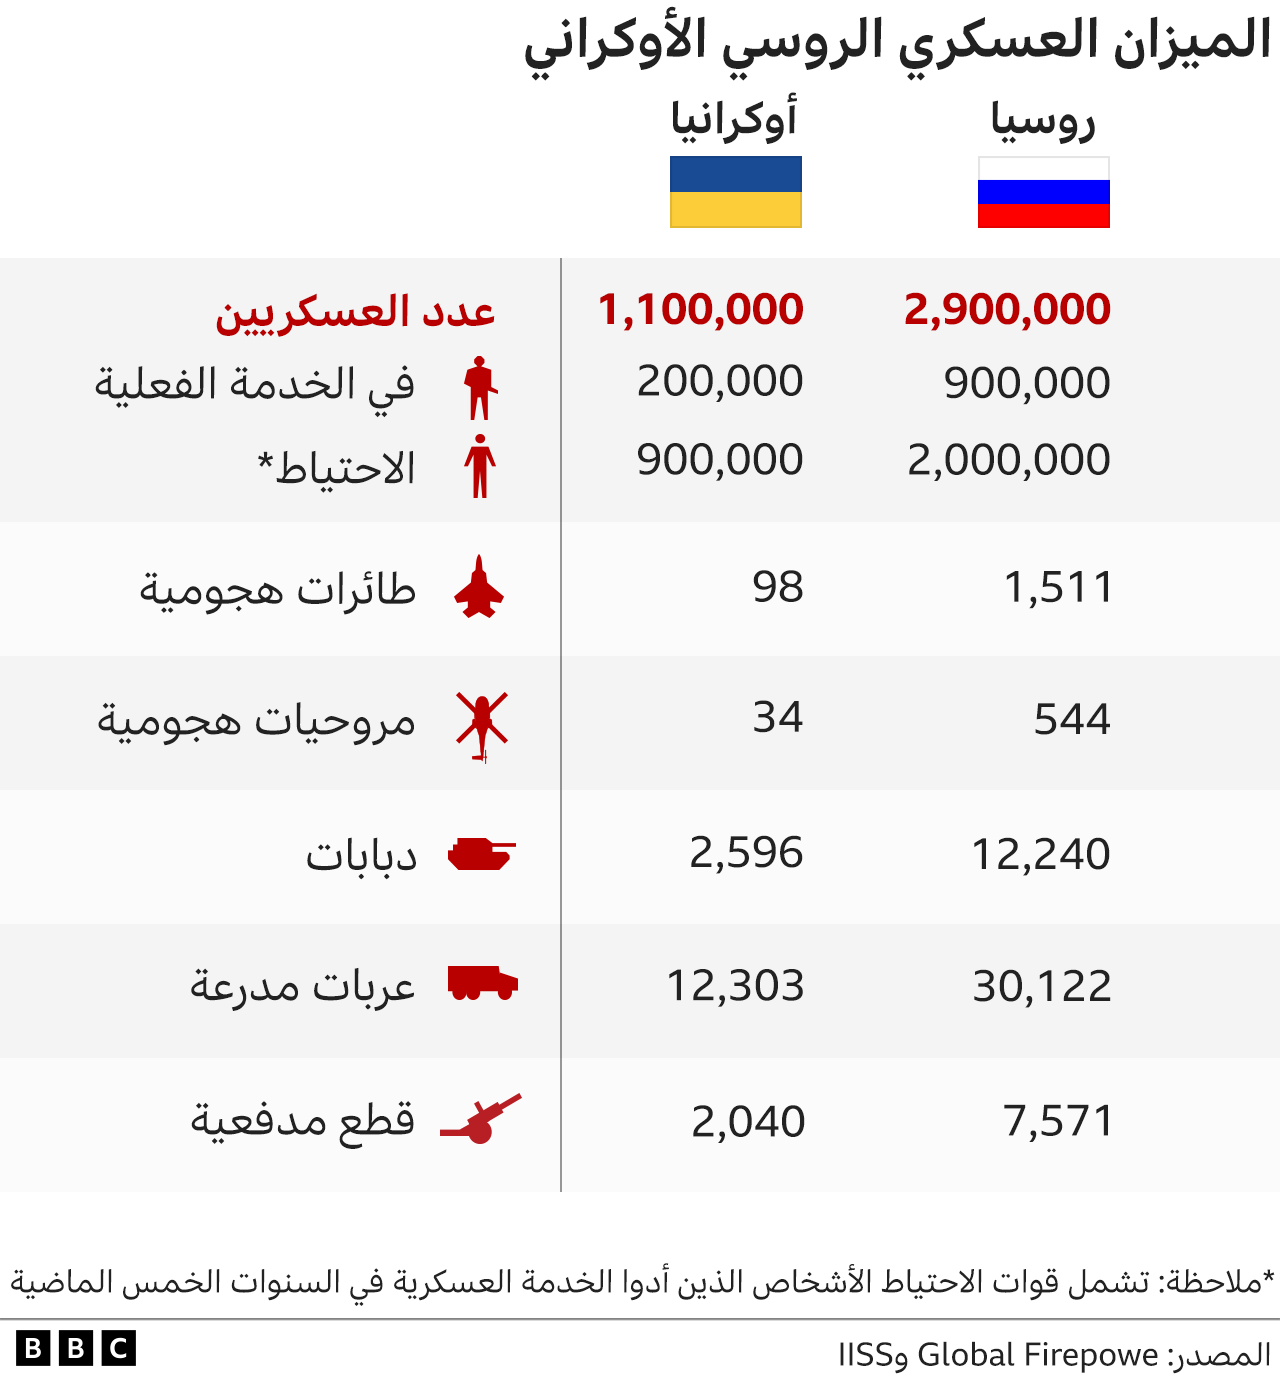 رسم يوضح الإمكانيات العسكرية لكل من الجيشين الروسي والأوكراني